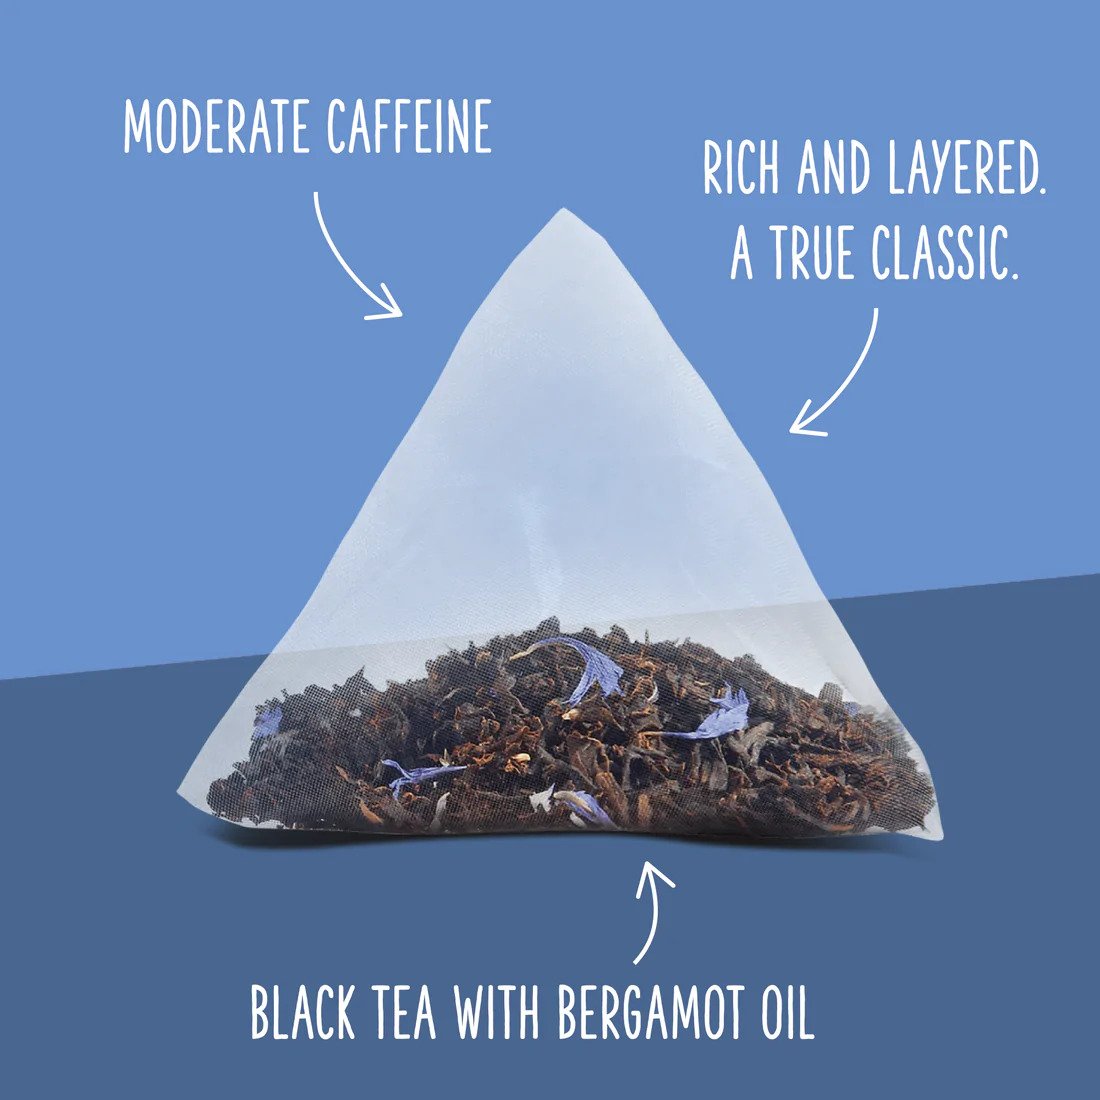 Two Leaves Tea - Box of 100 Tea Sachets: Organic Earl Grey Tea